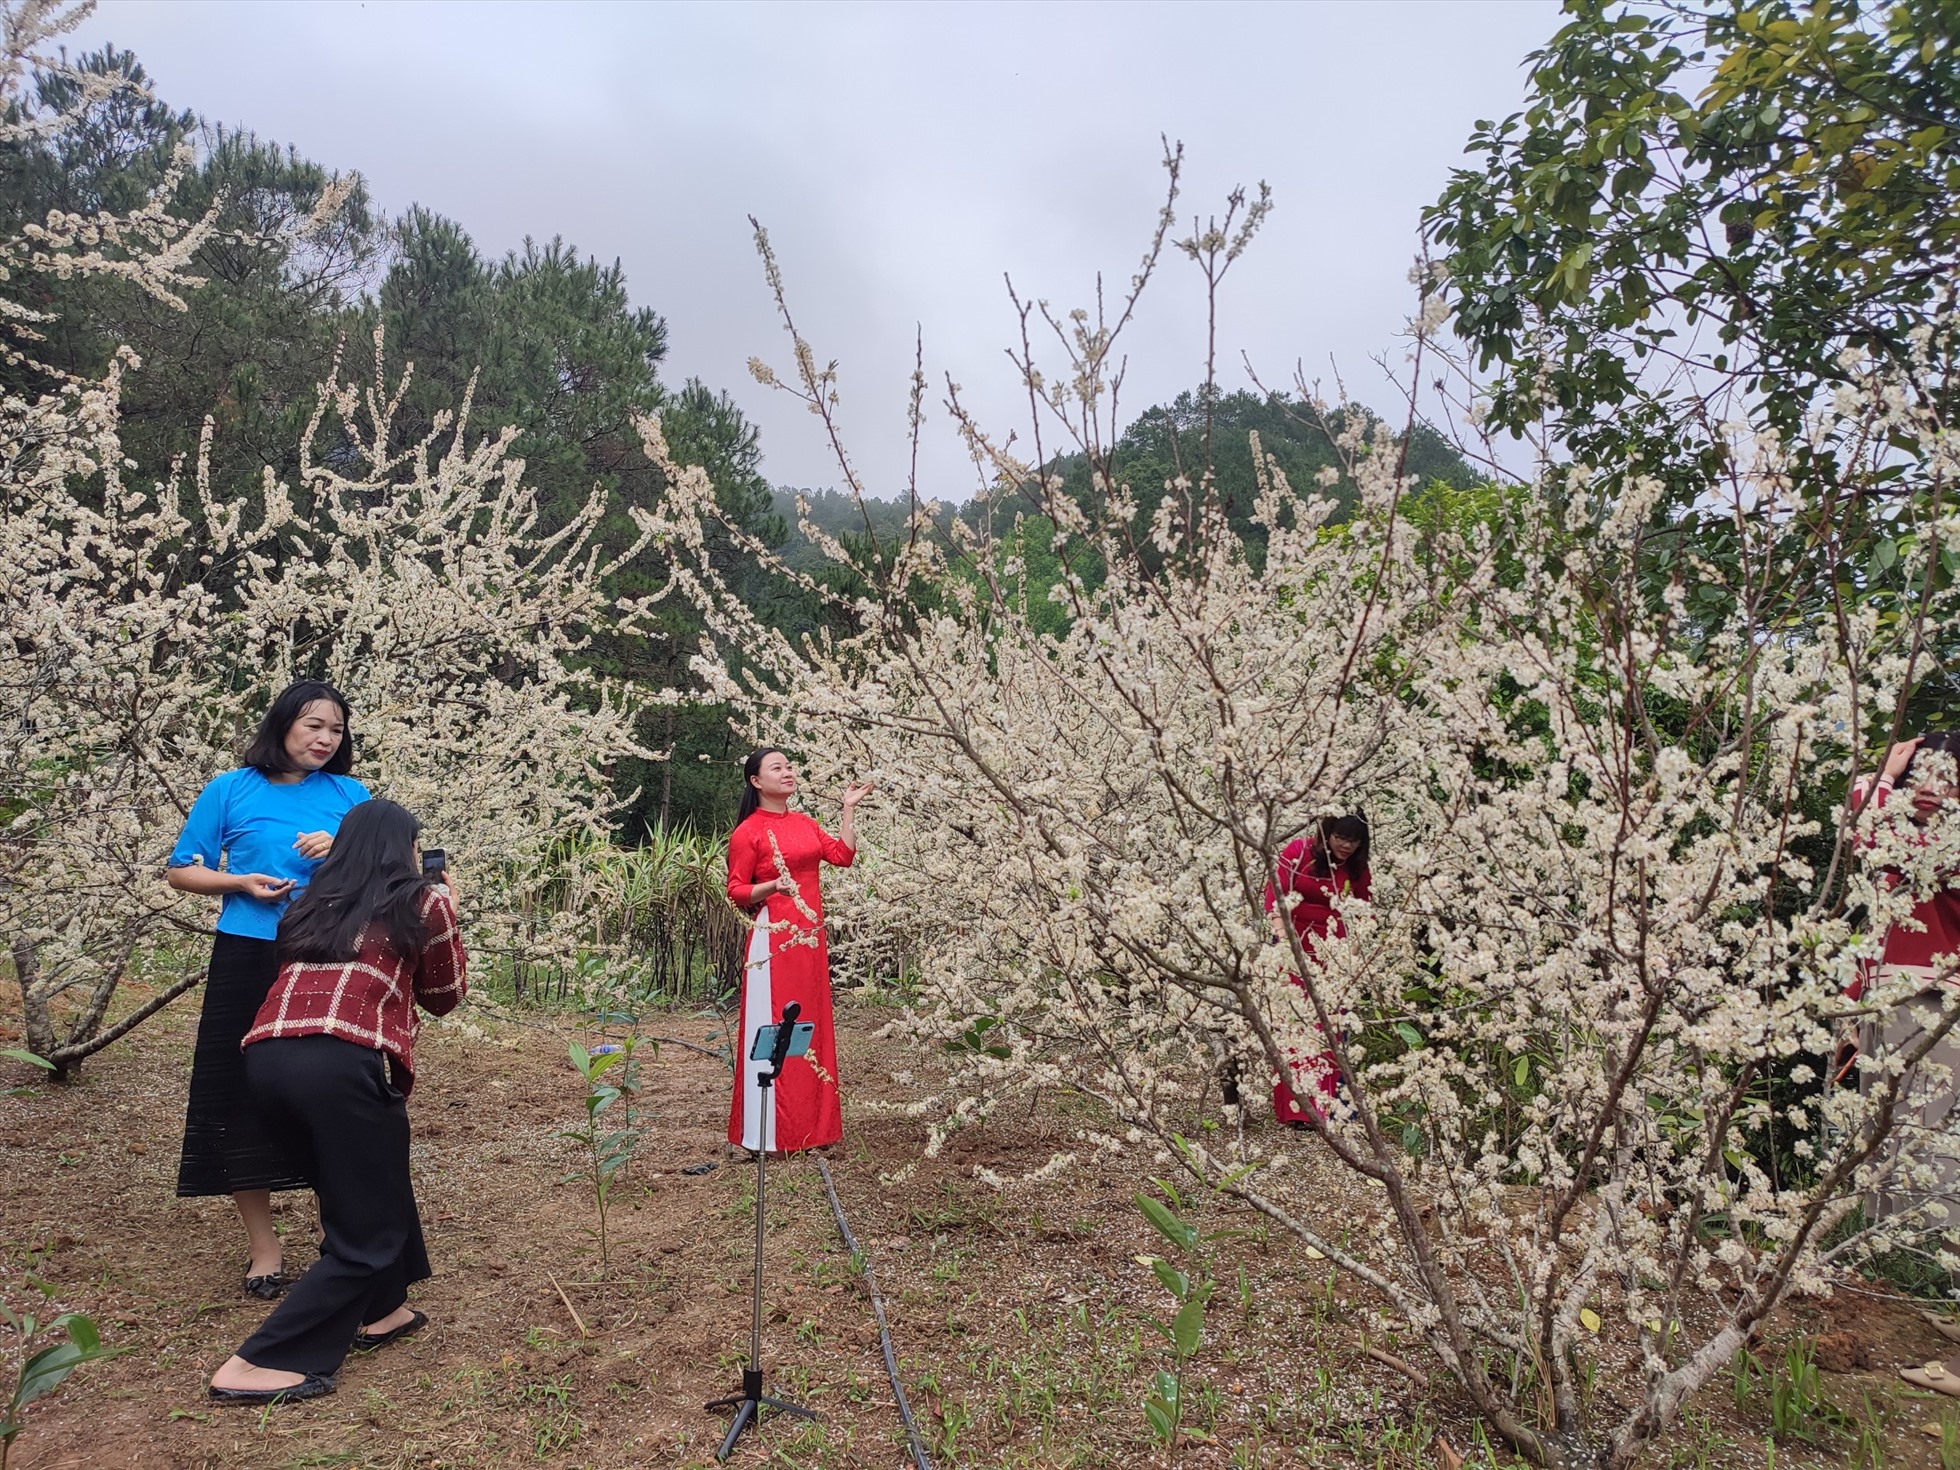 Khu vườn mận của một gia đình tại khu Pắc Liềng, thị trấn Bình Liêu thu hút nhiều người đến tham quan, chụp ảnh. Ảnh: Cường Pin